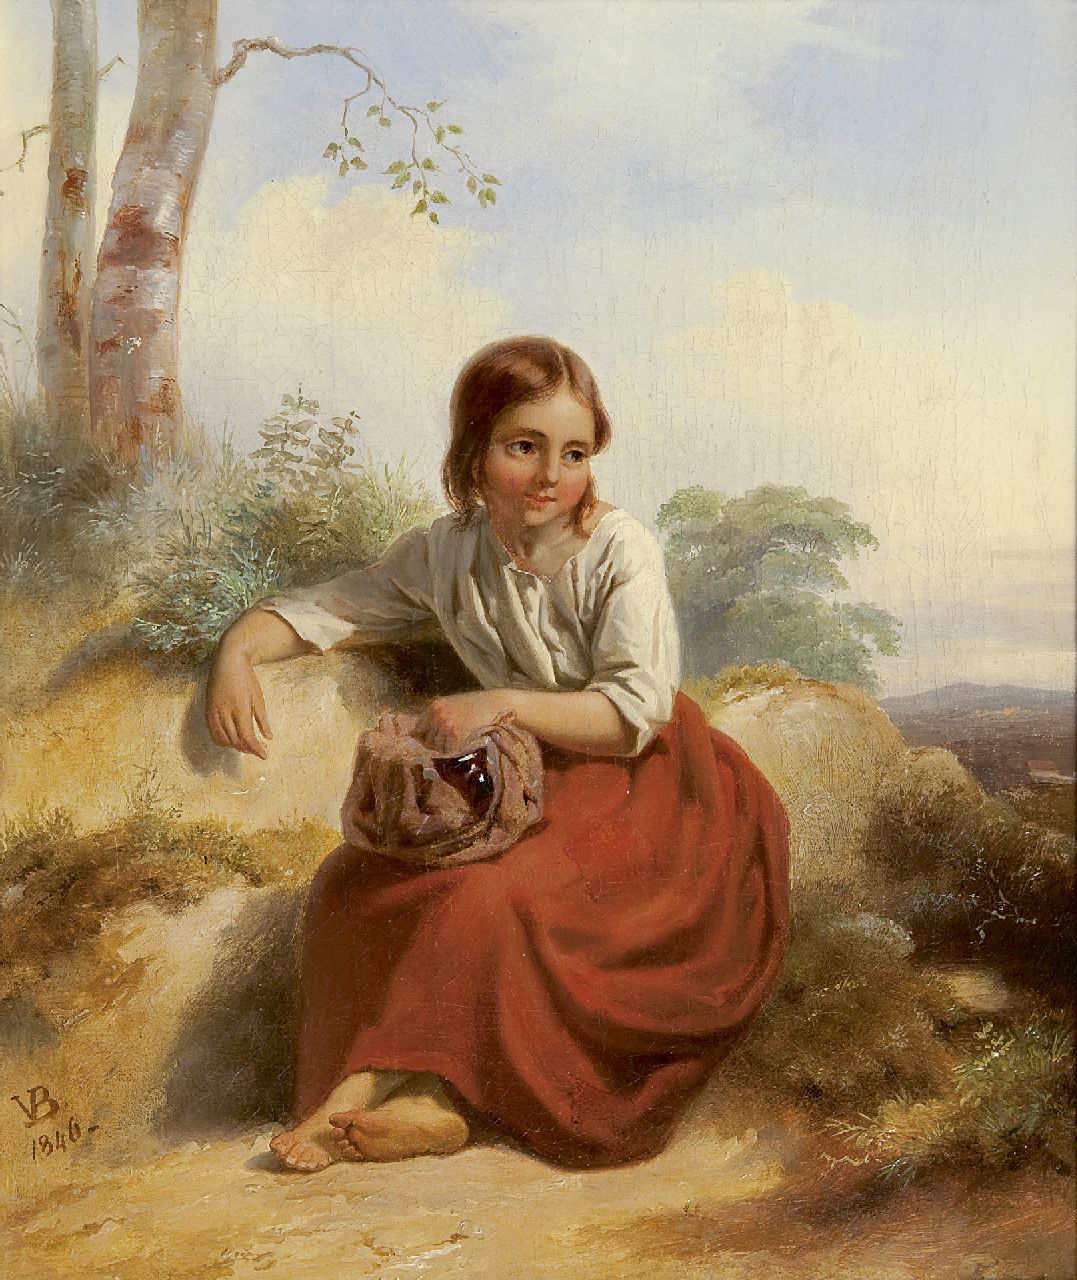 Bing V.  | Valentijn Bing, Herderinnetje, olieverf op doek 33,8 x 27,7 cm, gesigneerd linksonder met monogram en gedateerd 1846